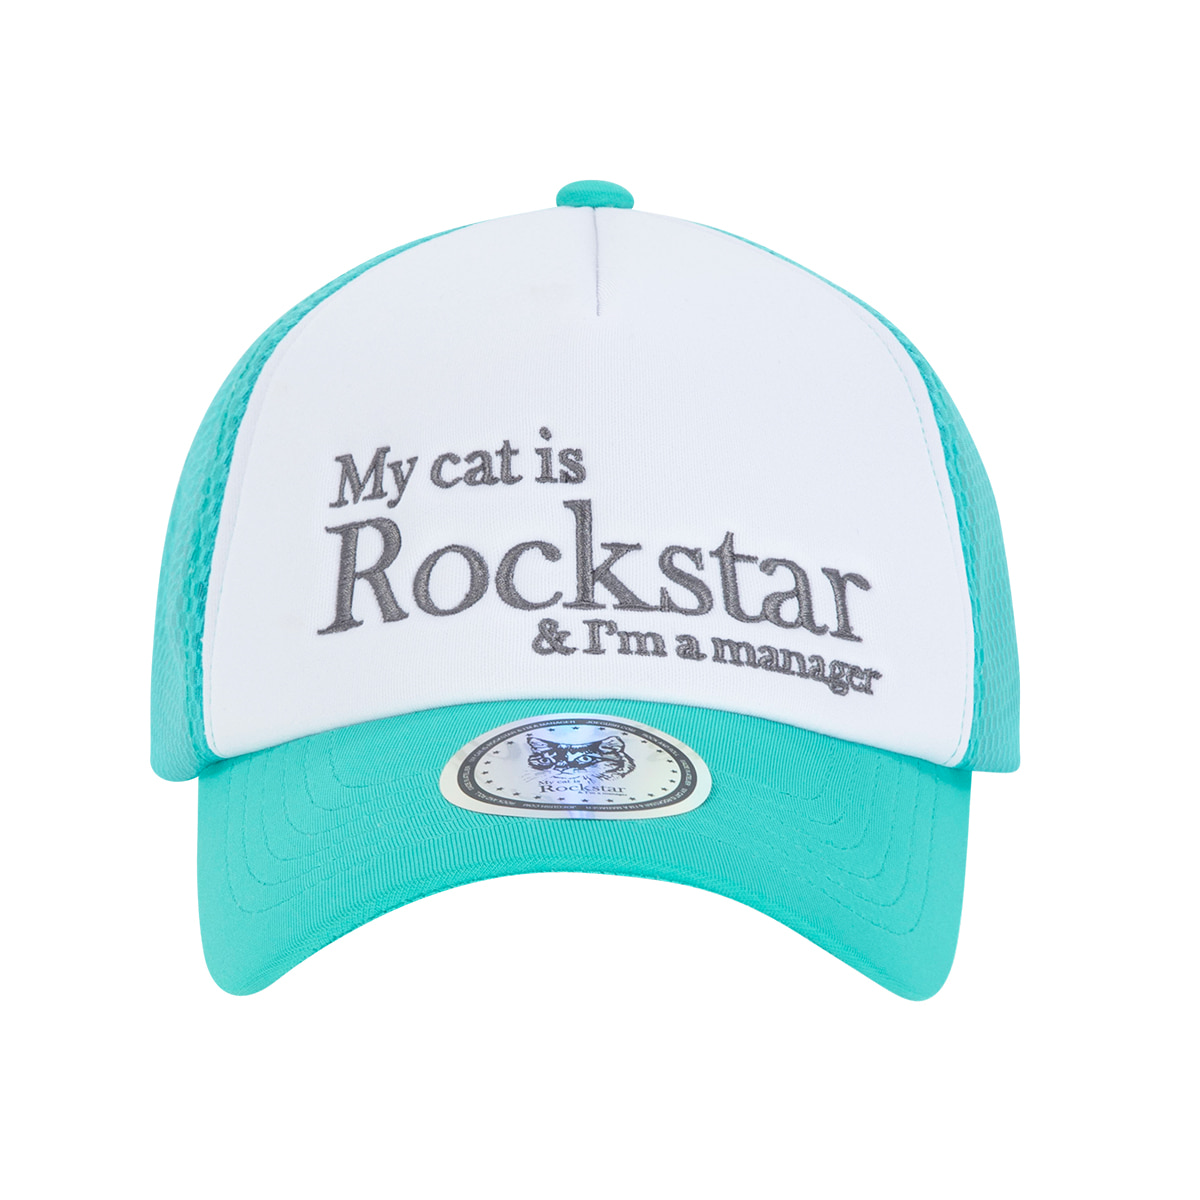 Rockstar cat Mesh cap (Mint)